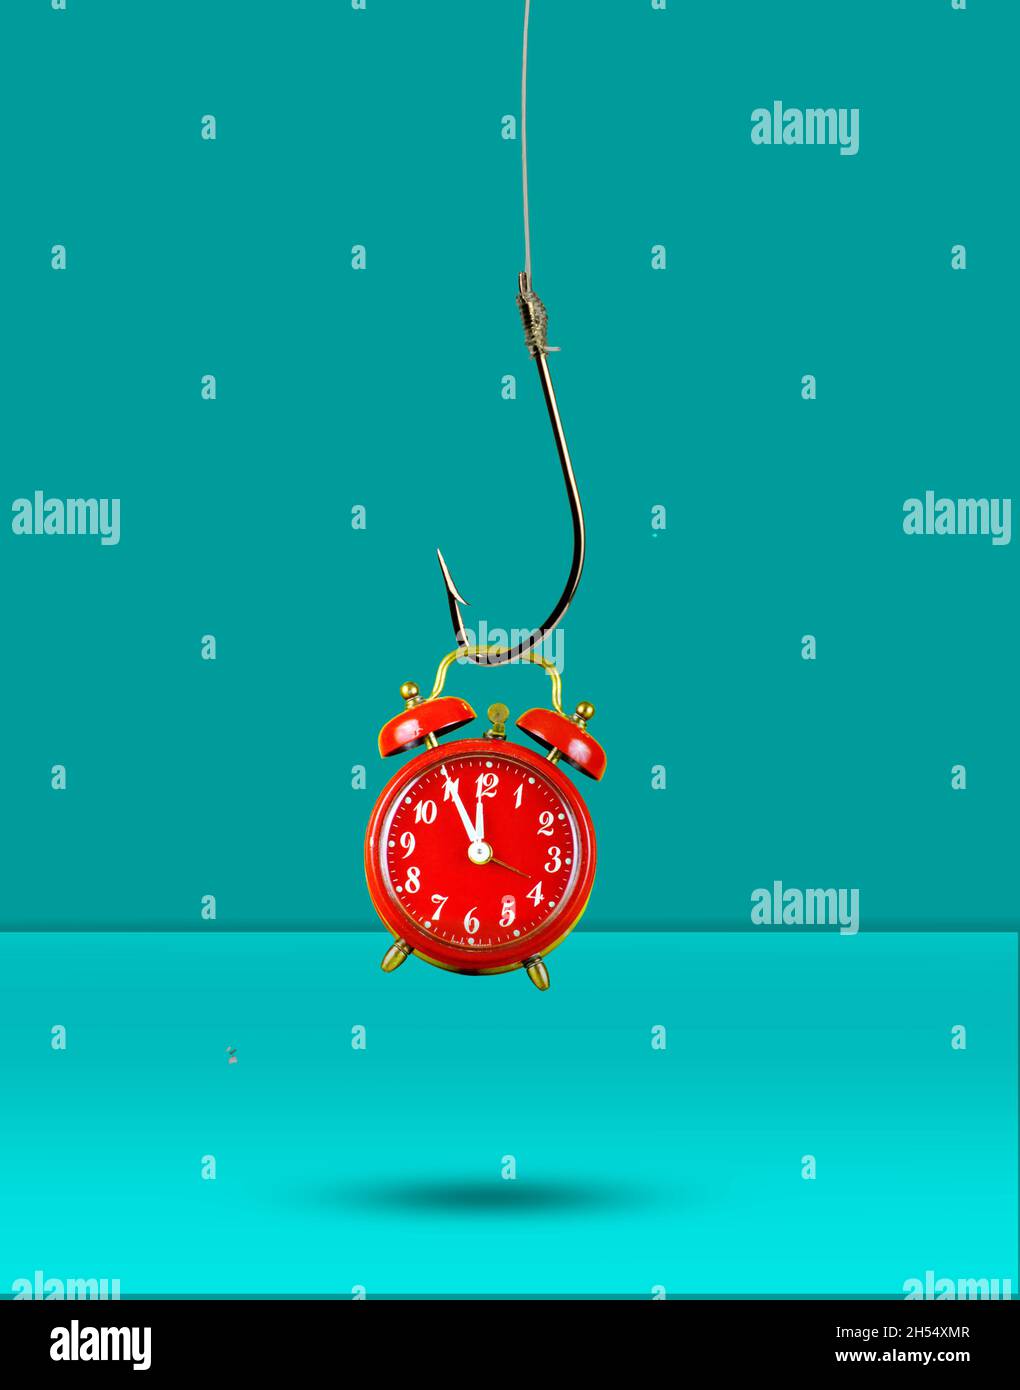 Horloge rouge accrochée à un crochet de pêche.Le temps est écoulé, de cinq minutes à douze heures.Concept de temps. Banque D'Images